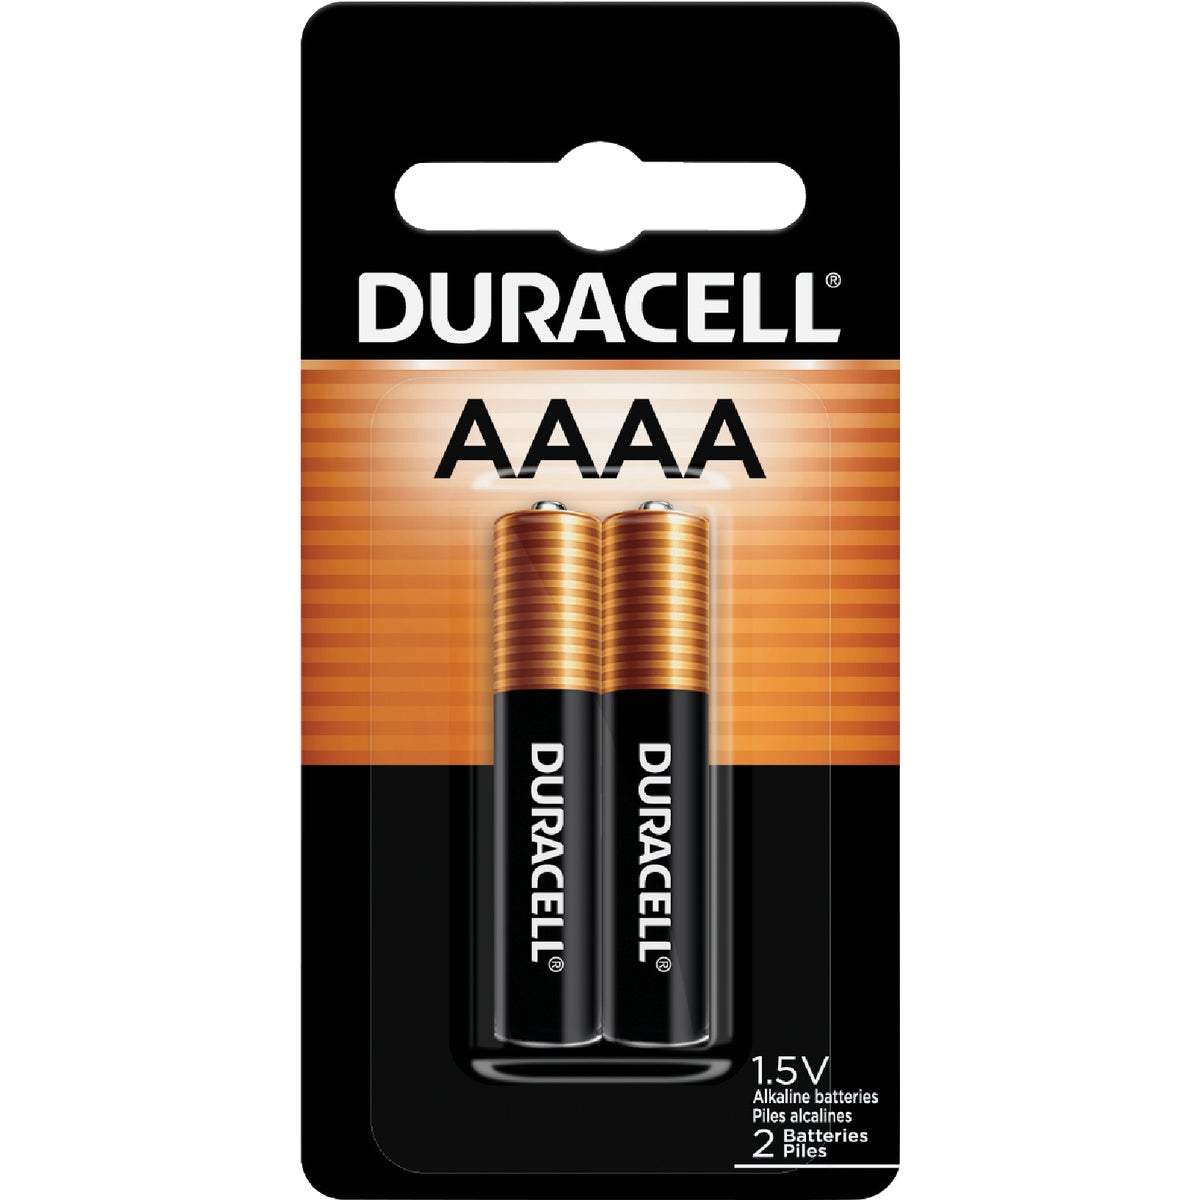 Duracell AAAA Alkaline Battery (2-Pack)